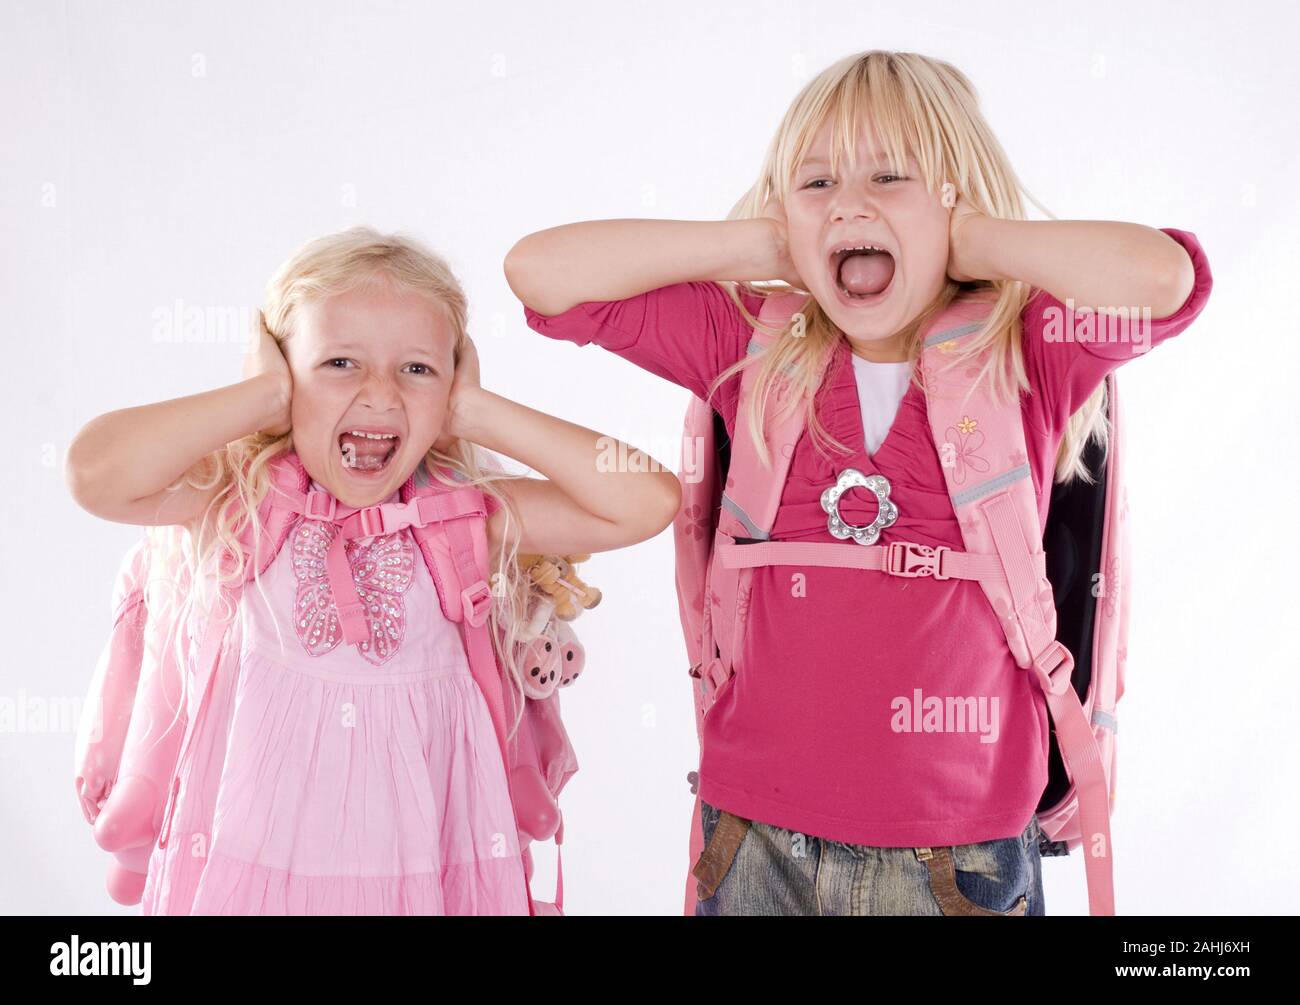 Zwei Mädchen, rubio, 6, 7 Jahre, halten sich die Ohren zu Schreien, señor:Yes Foto de stock